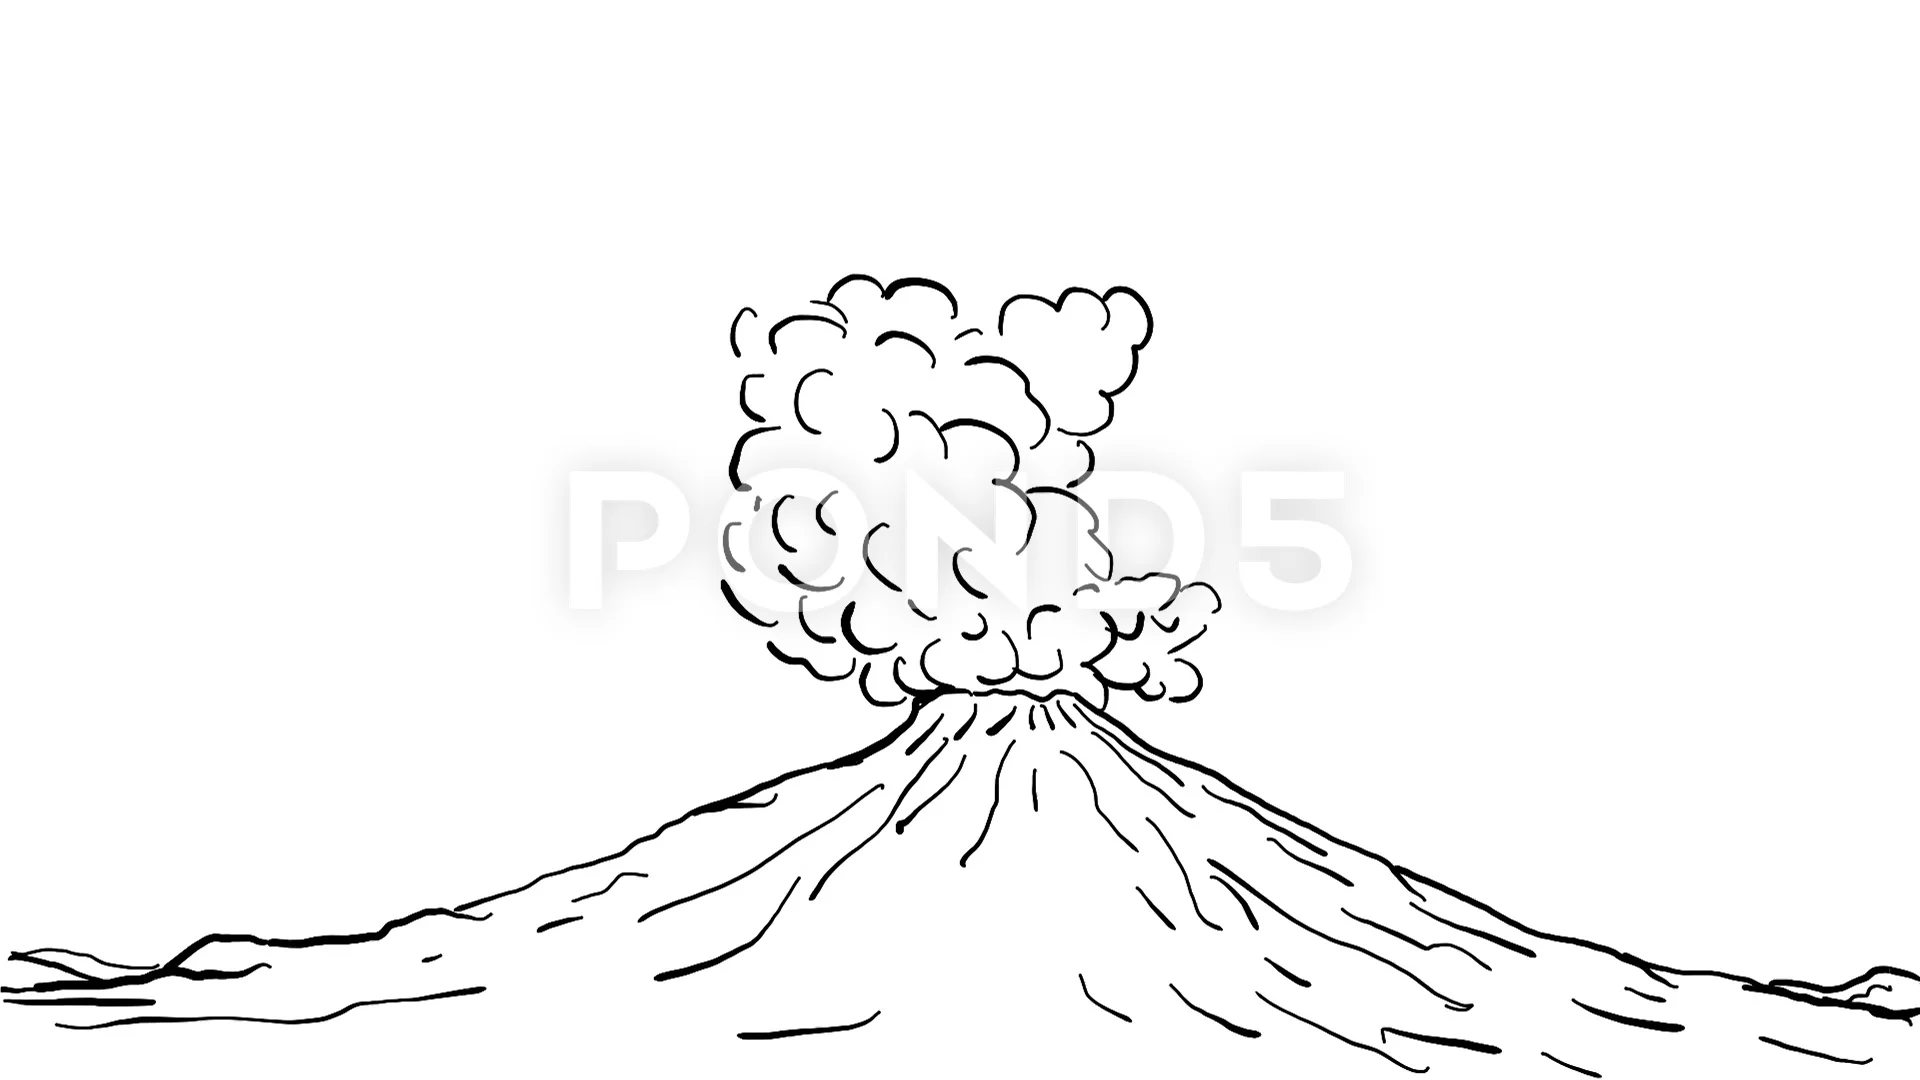 volcano vector sketch 7309241 Vector Art at Vecteezy